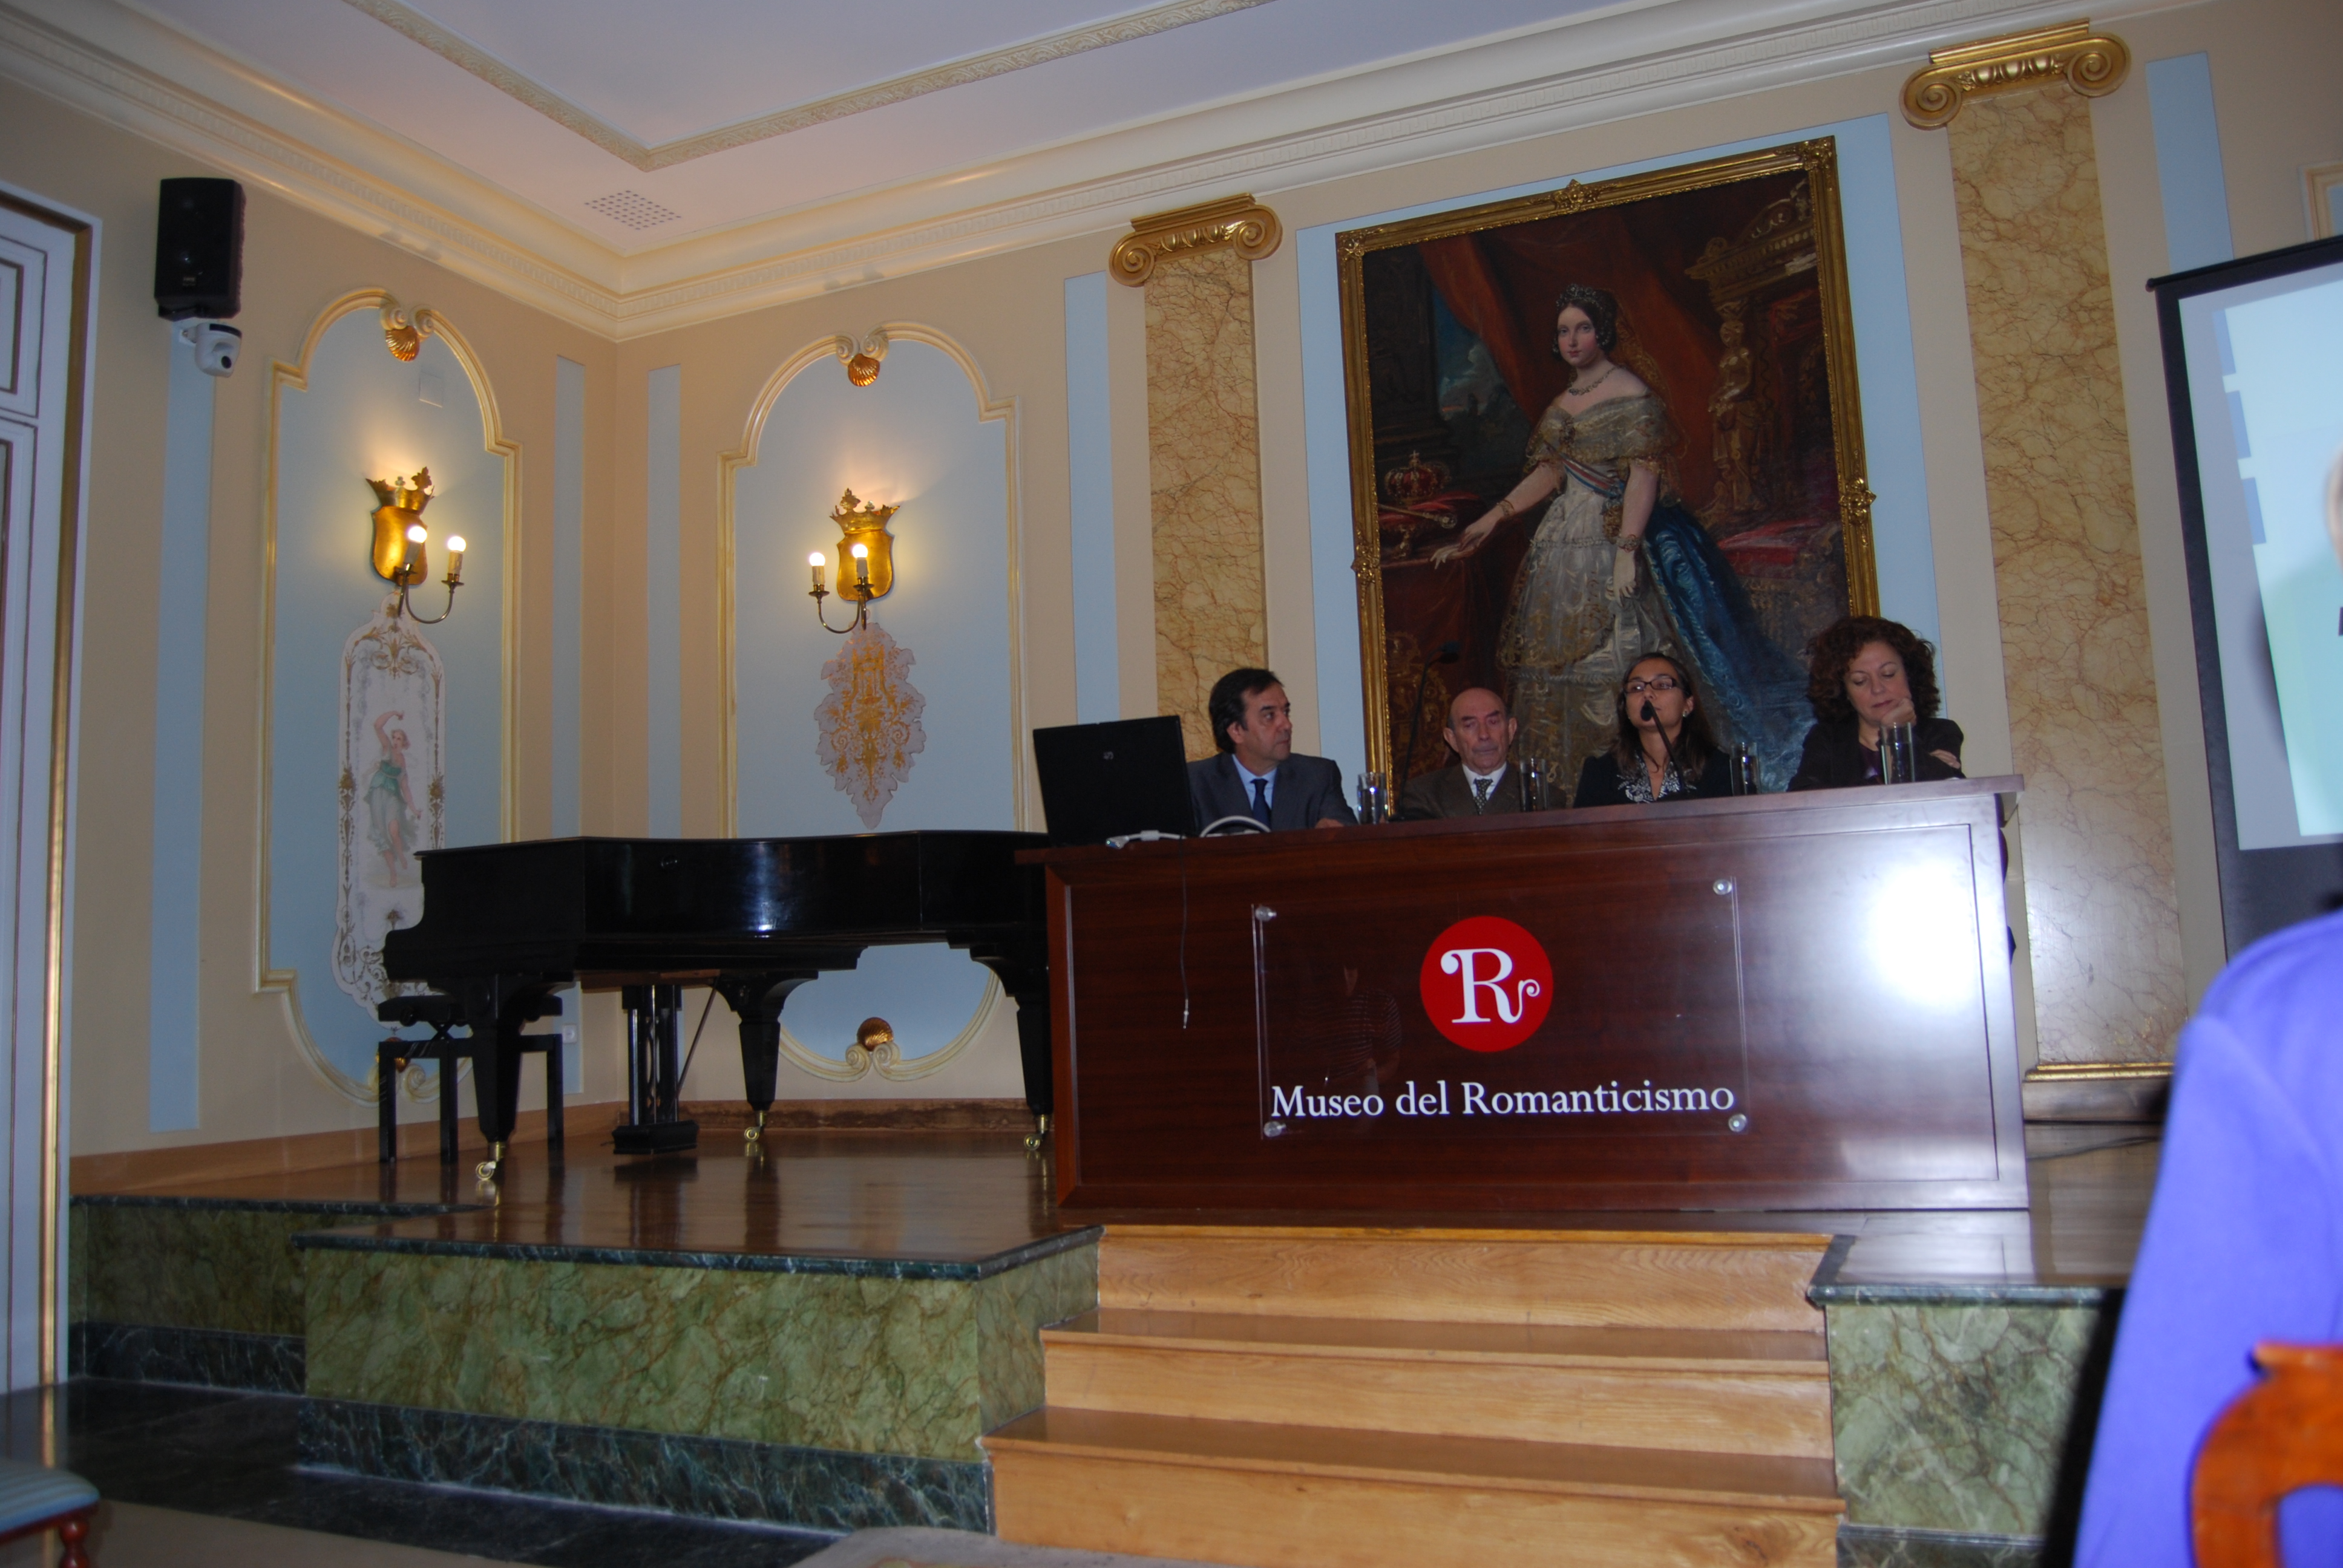 Presentación del Congreso [Directores: Asunción Cardona y Antonio Arroyo]: Intervención de Asunción Cardona, directora del Museo del Romanticismo